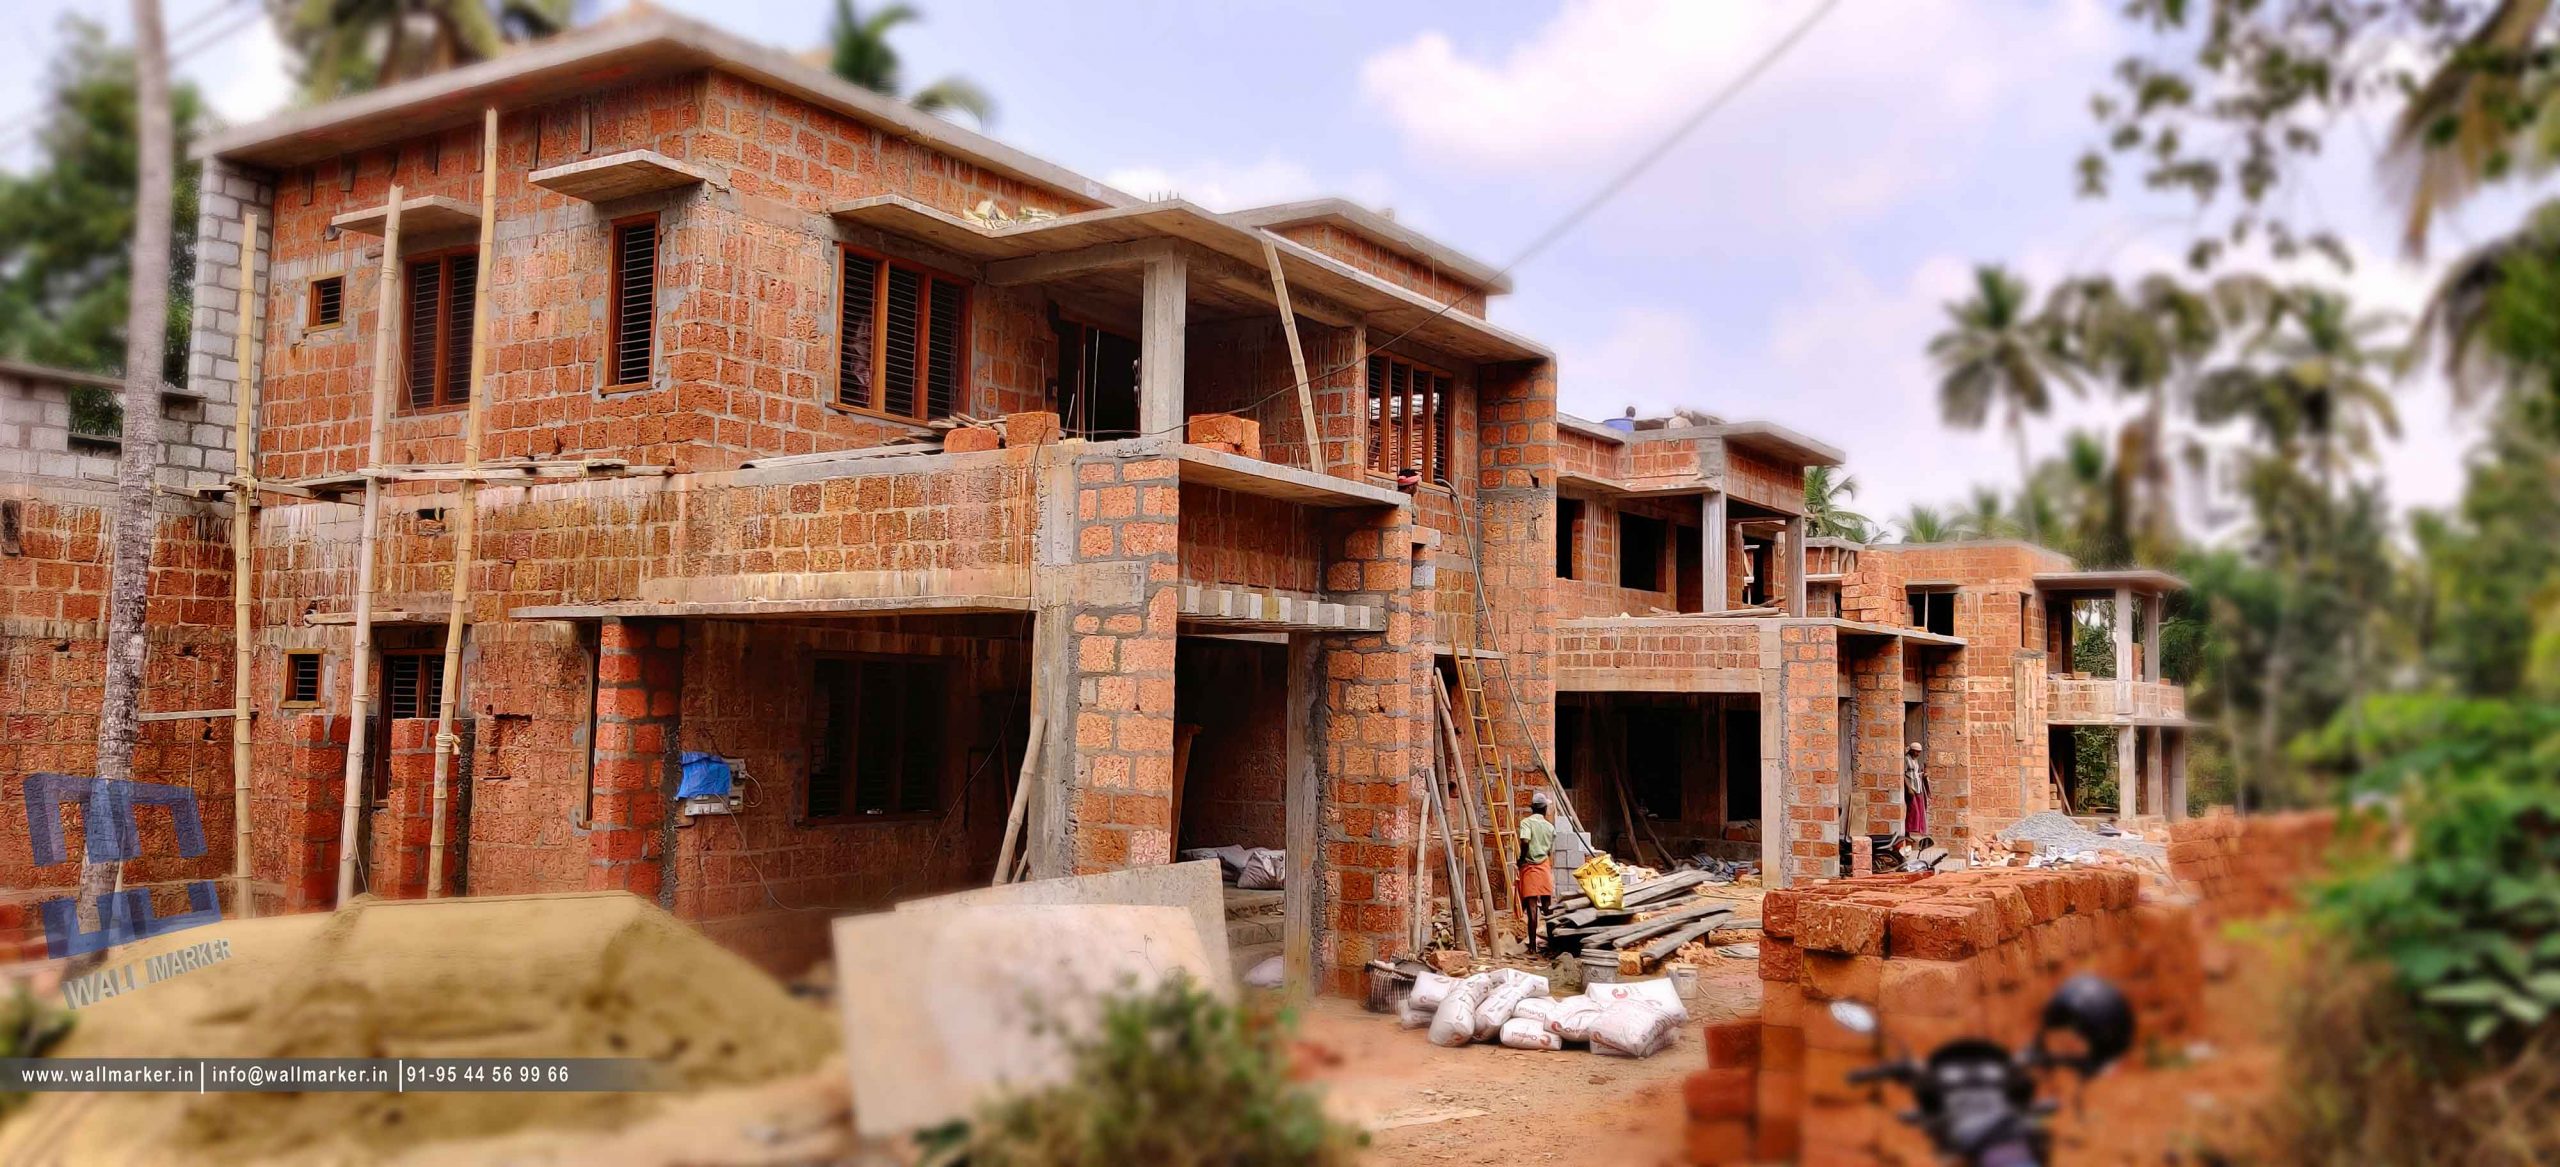 Kuthuparamba villa project